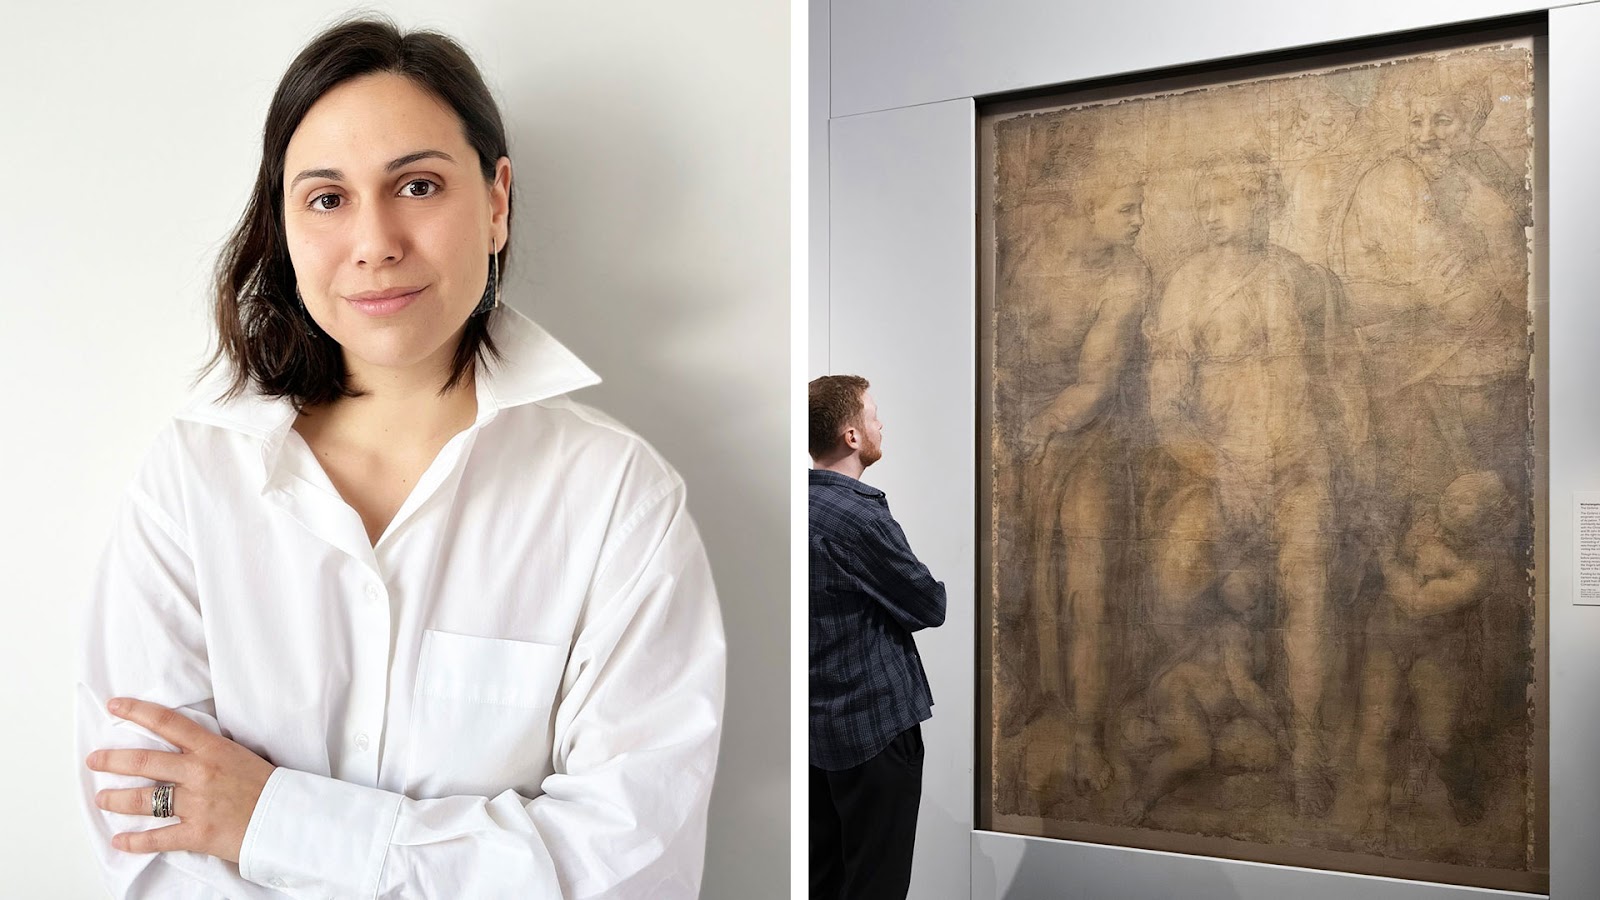 Αριστερά, στα 37 της η Θεοδώρα Πυρογιάννη, σχεδιάστρια μουσειακών εκθέσεων, έχει ήδη στο ενεργητικό της τον σχεδιασμό τεσσάρων σημαντικών παραγωγών του Βρετανικού Μουσείου. Δεξιά, επισκέπτης μπροστά στο μνημειακό έργο «Epifania» του Μιχαήλ Αγγελου, που θεωρείται ένα από τα μεγαλύτερα έργα της Αναγέννησης σε χαρτί και αποτελείται από 26 κομμάτια χαρτονιού. [Credit: The Trustees of the British Museum]